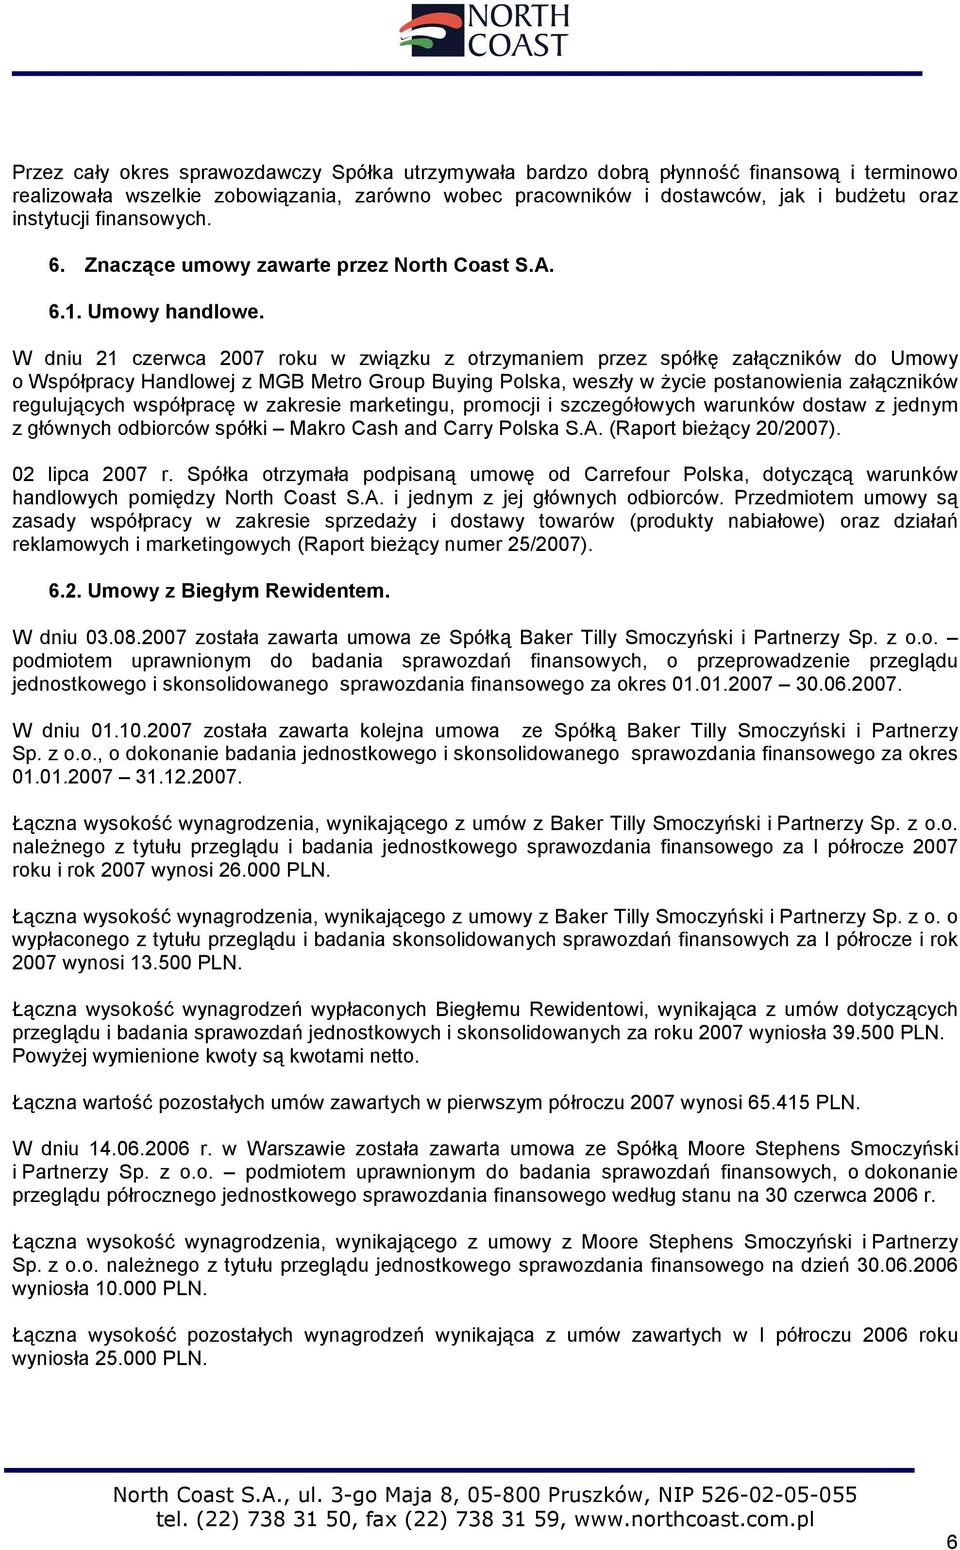 W dniu 21 czerwca 2007 roku w związku z otrzymaniem przez spółkę załączników do Umowy o Współpracy Handlowej z MGB Metro Group Buying Polska, weszły w życie postanowienia załączników regulujących